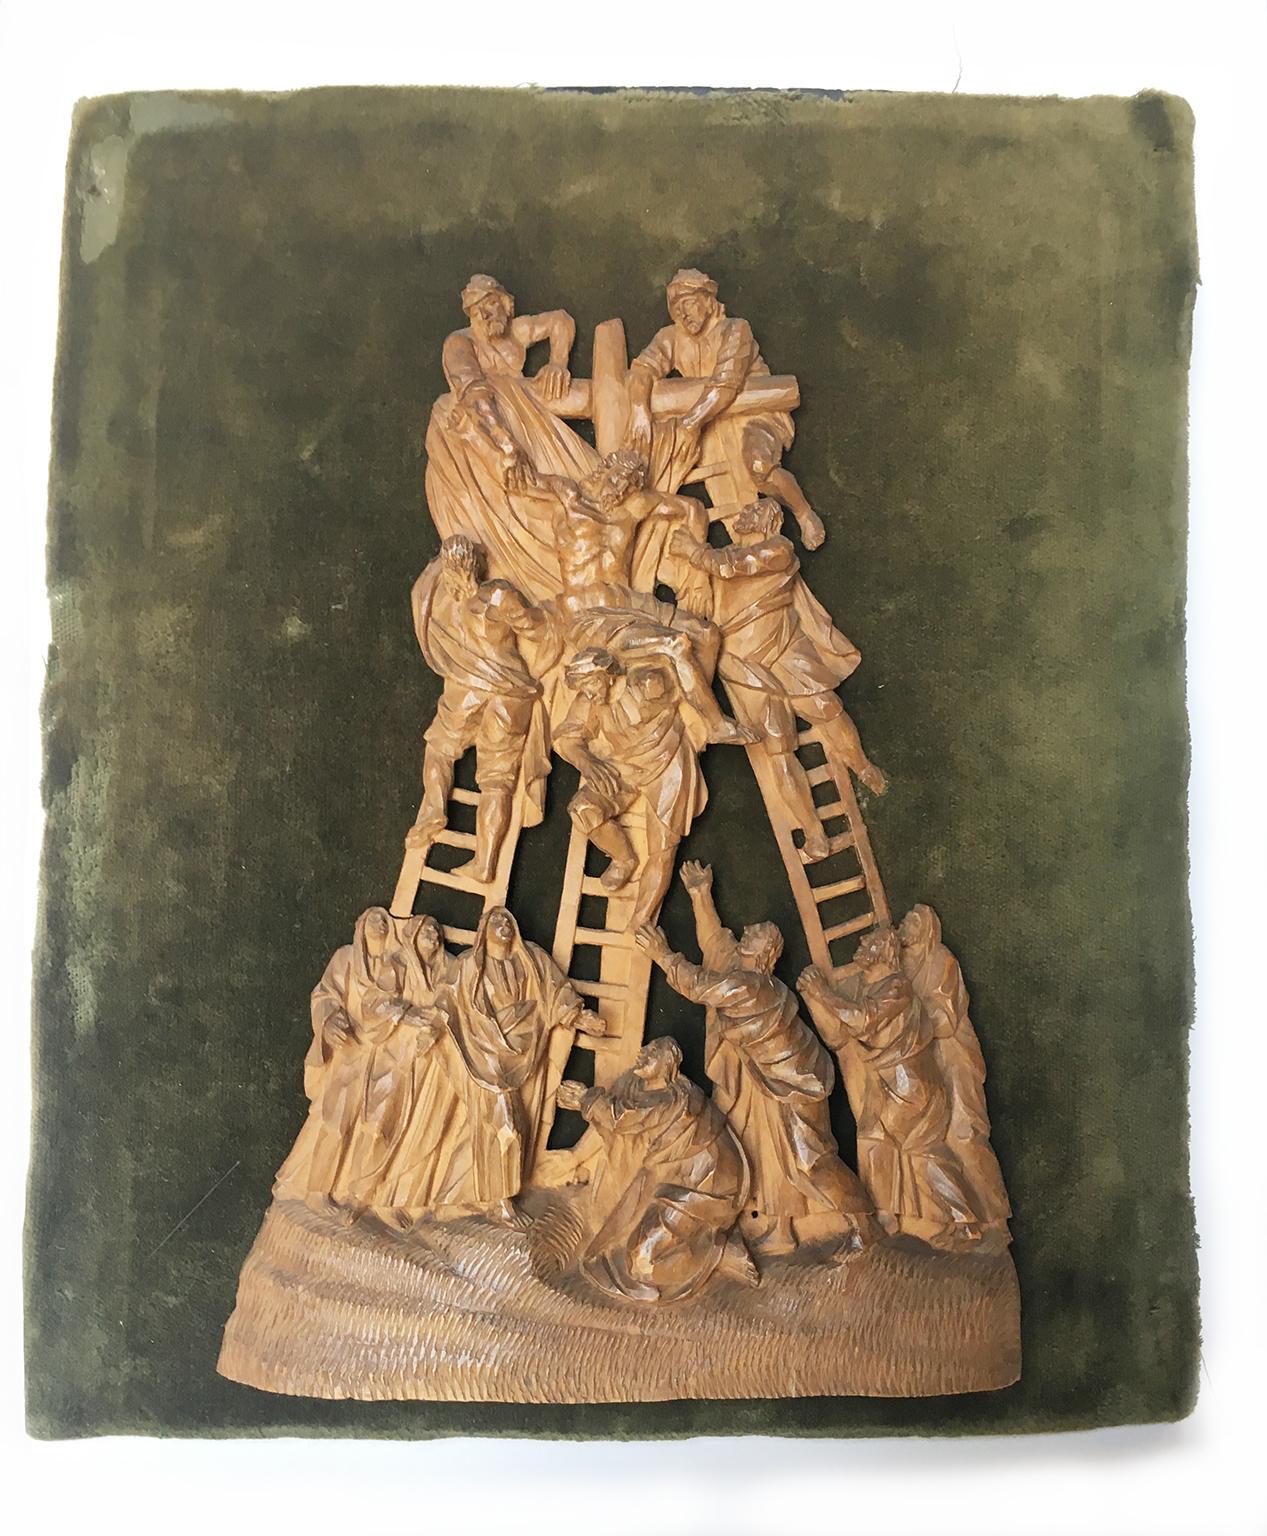 Buchsbaum Mikroschnitzerei
Ablage
Mitteleuropa, erste Hälfte des 18. Jahrhunderts
Es misst: die Skulptur 7,40 x 5,31 x 0,6 in (18,8 x 13,5 x 1,6 cm); mit der Tablette 9,37 x 8,7 x 1,33 in (23,8 x 20,5 x 3,4 cm)); 0,70 lb (320 g).
Erhaltungszustand: